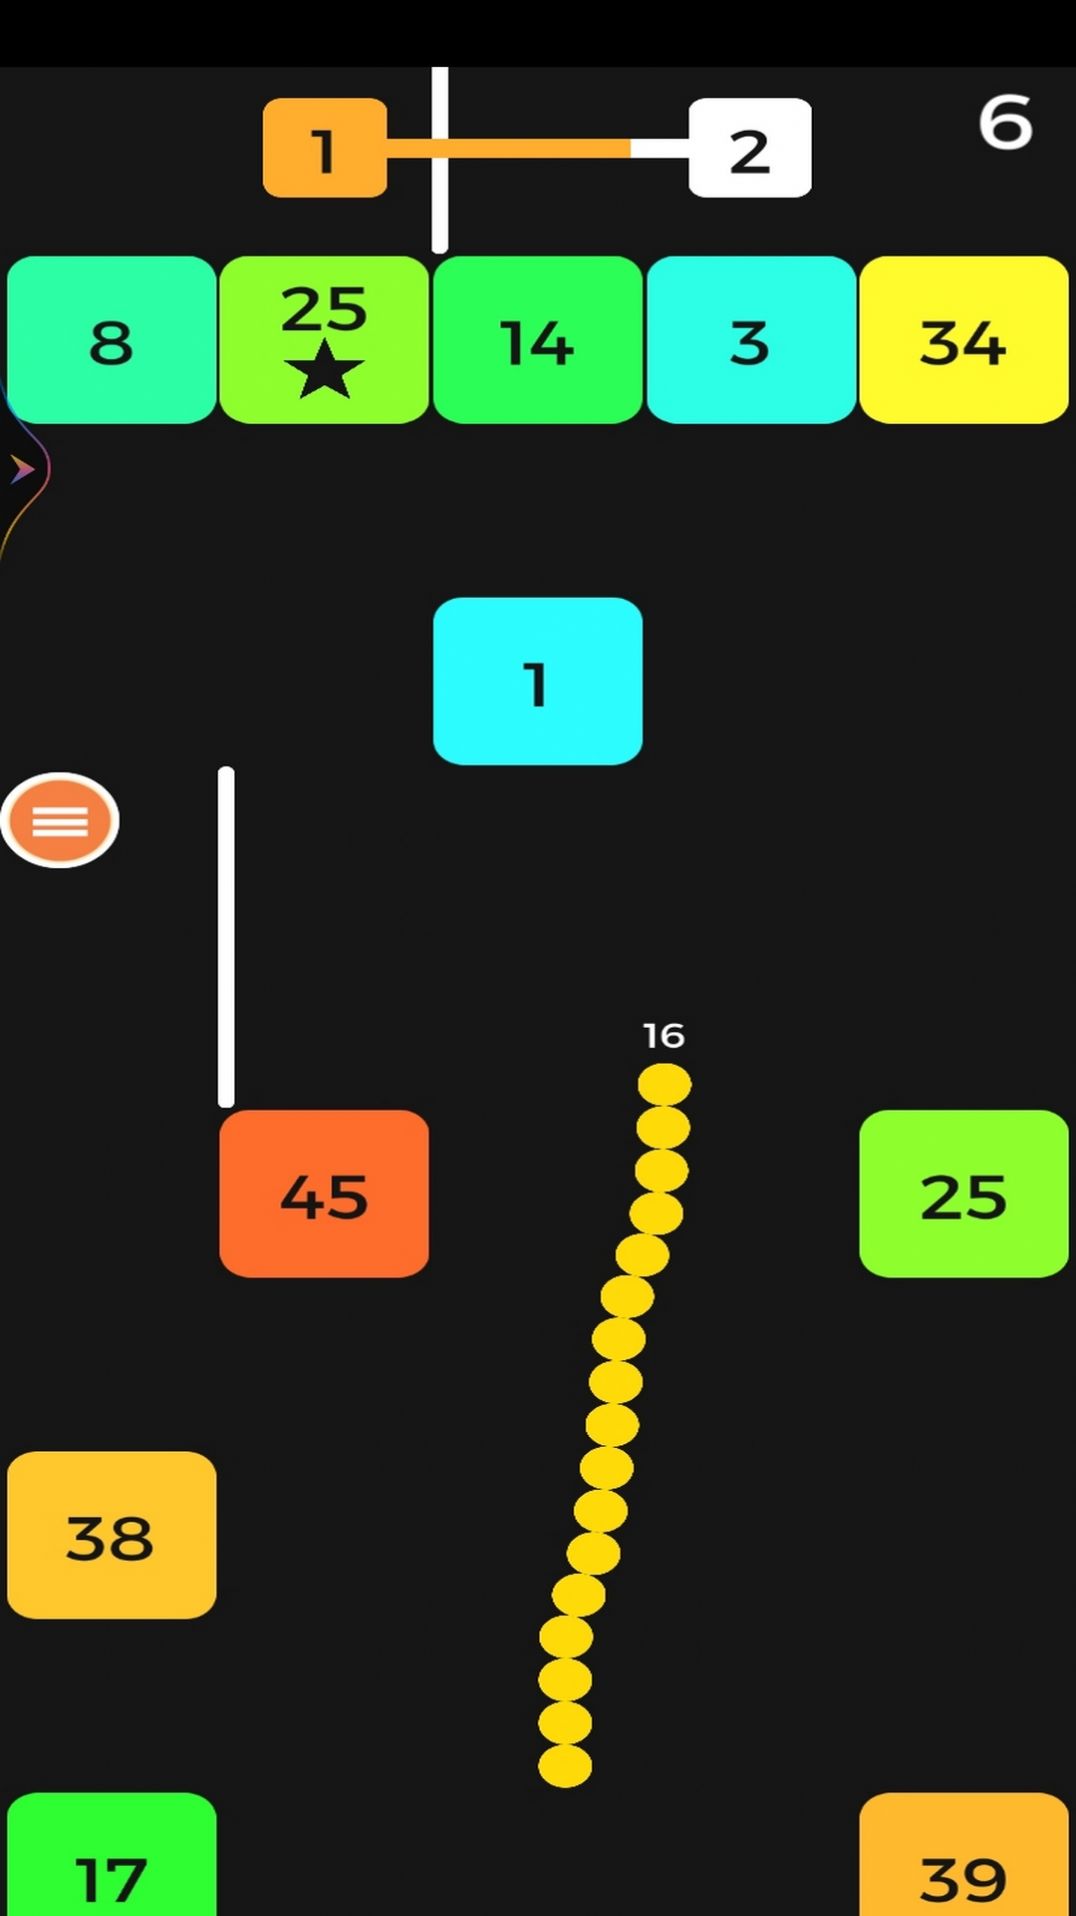 一条蛇撞方块游戏下载最新版 v1.0截图1